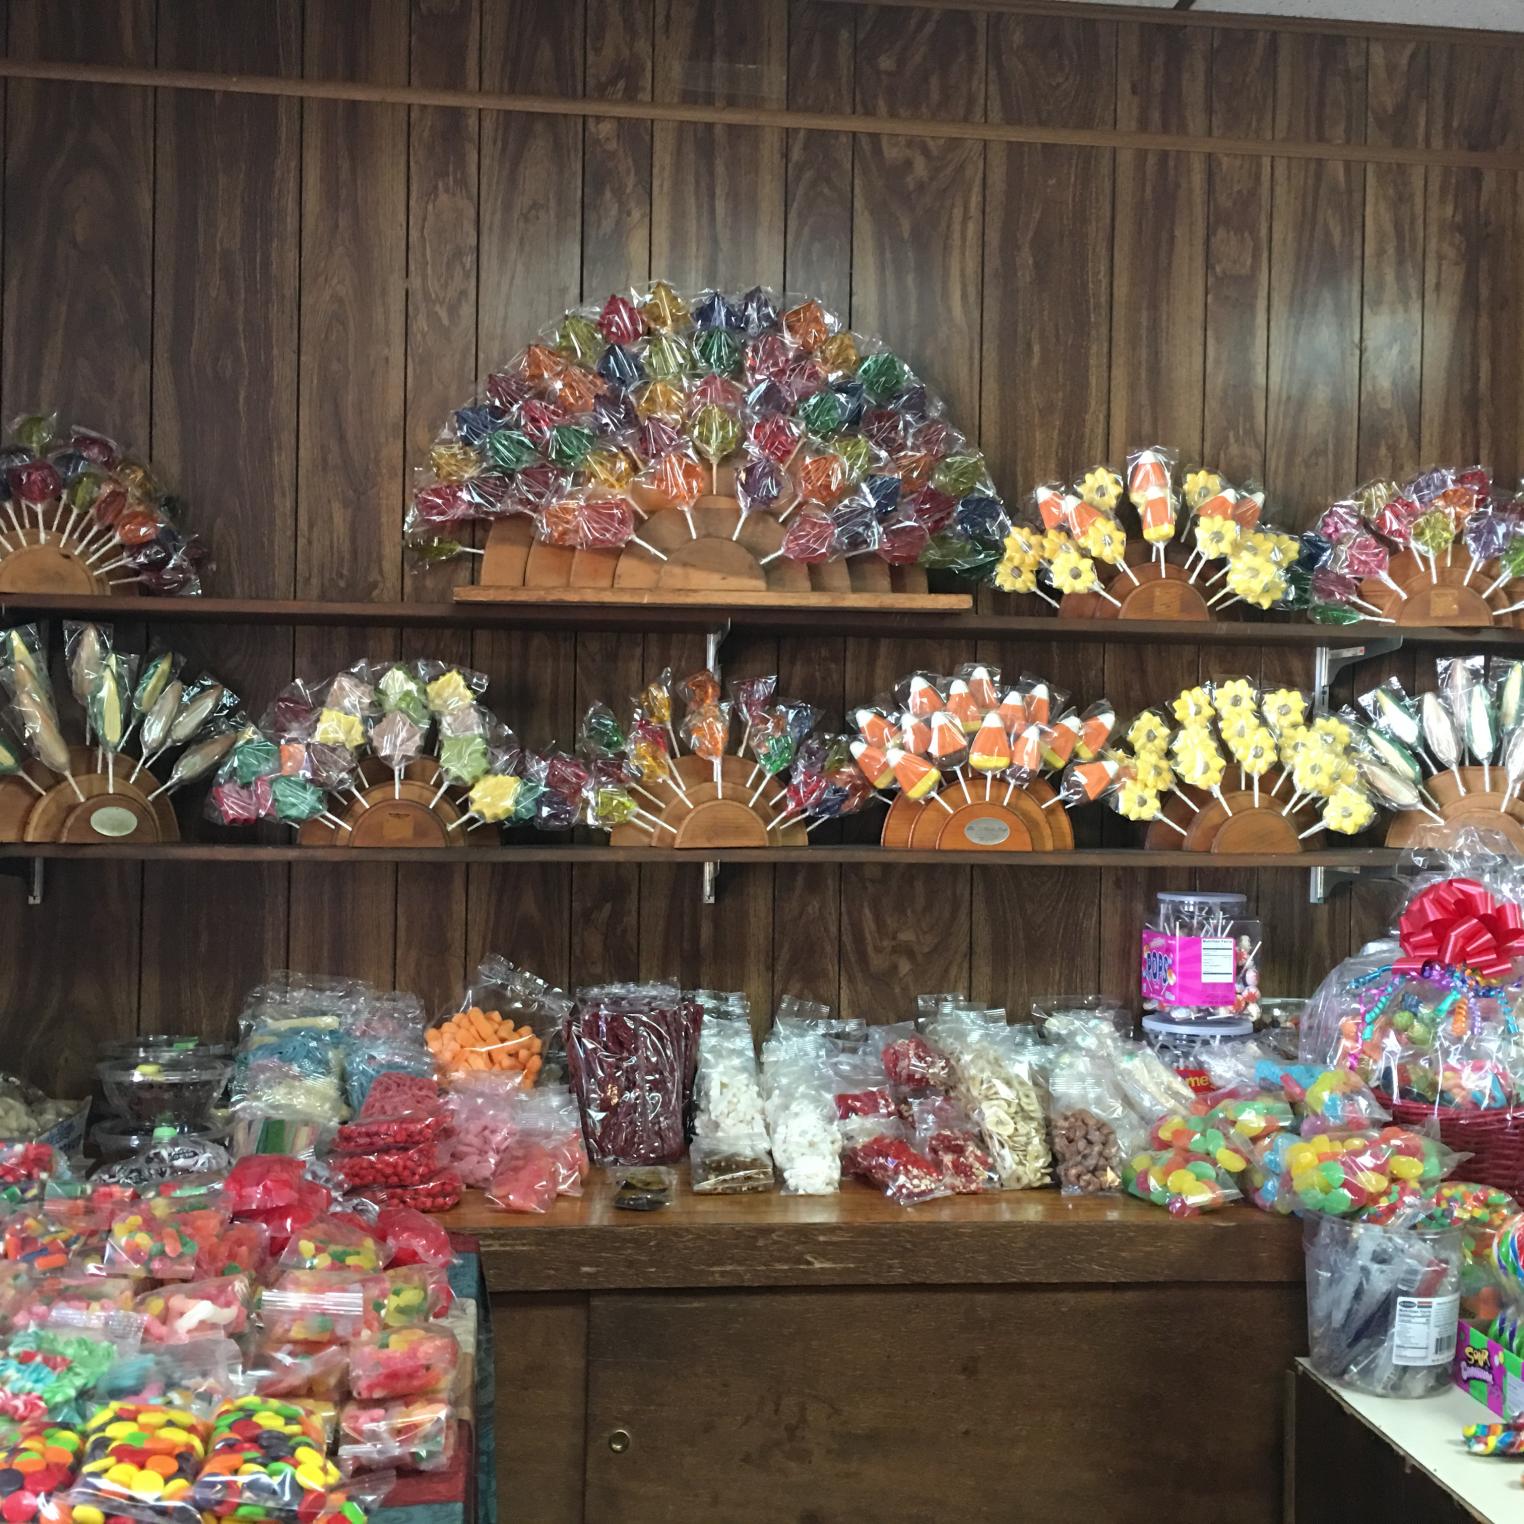 The Lollipop Shop